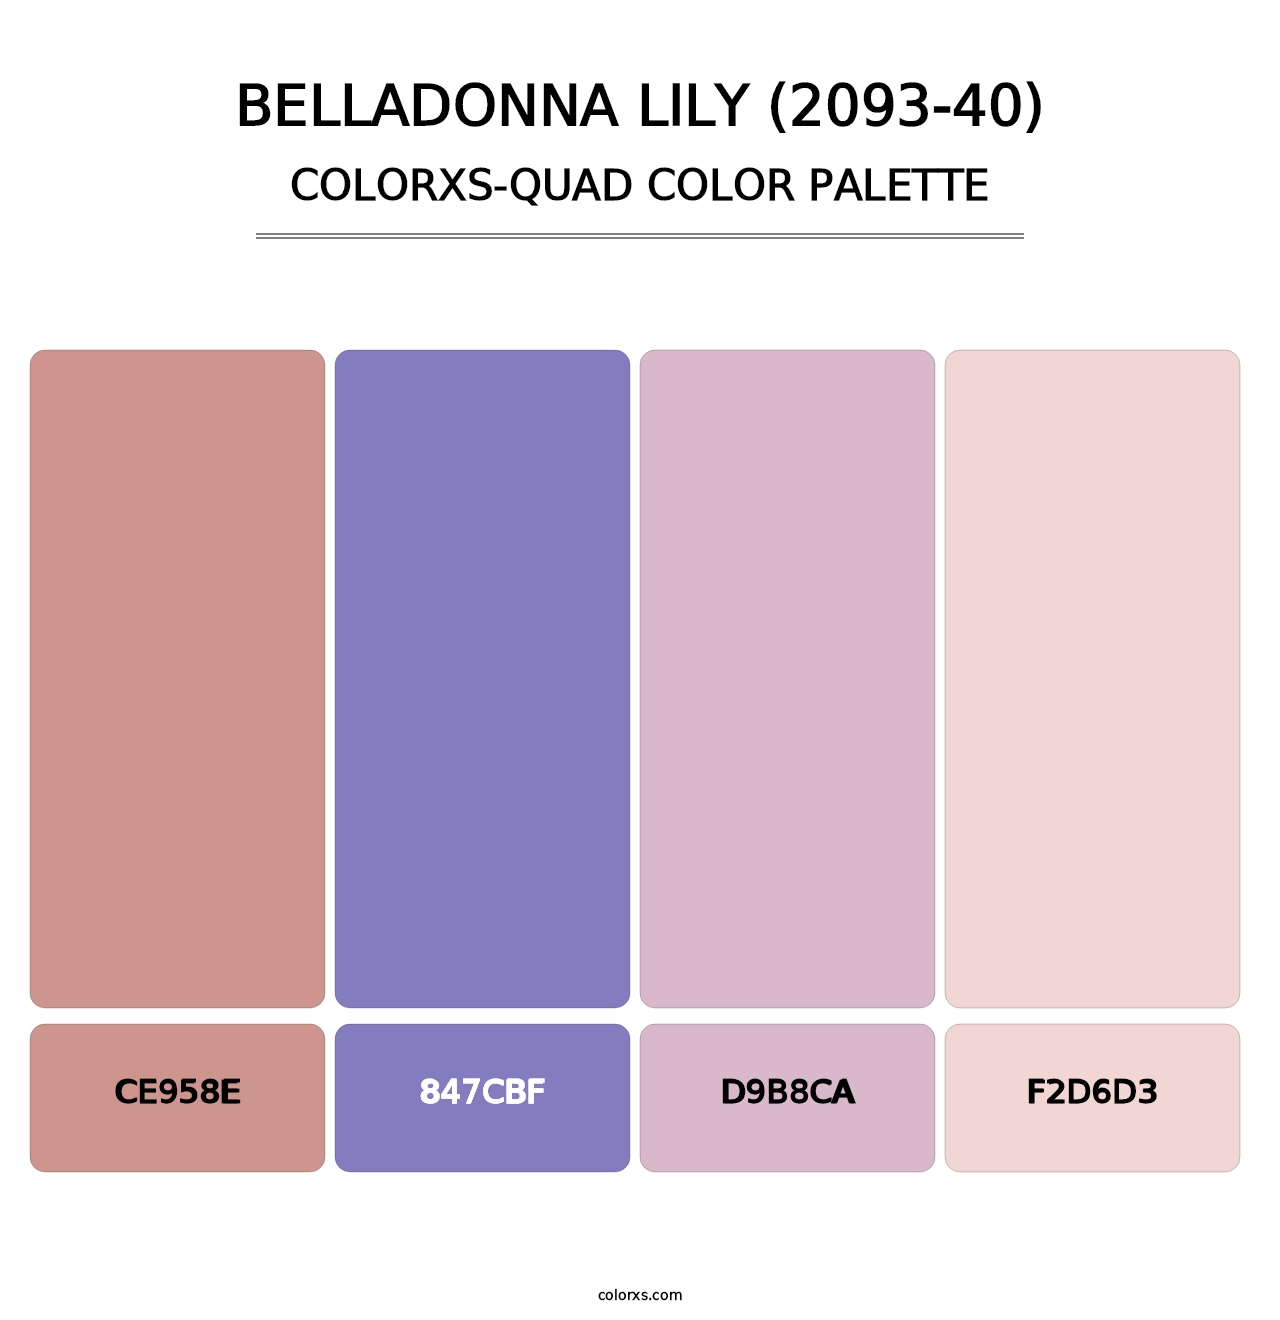 Belladonna Lily (2093-40) - Colorxs Quad Palette